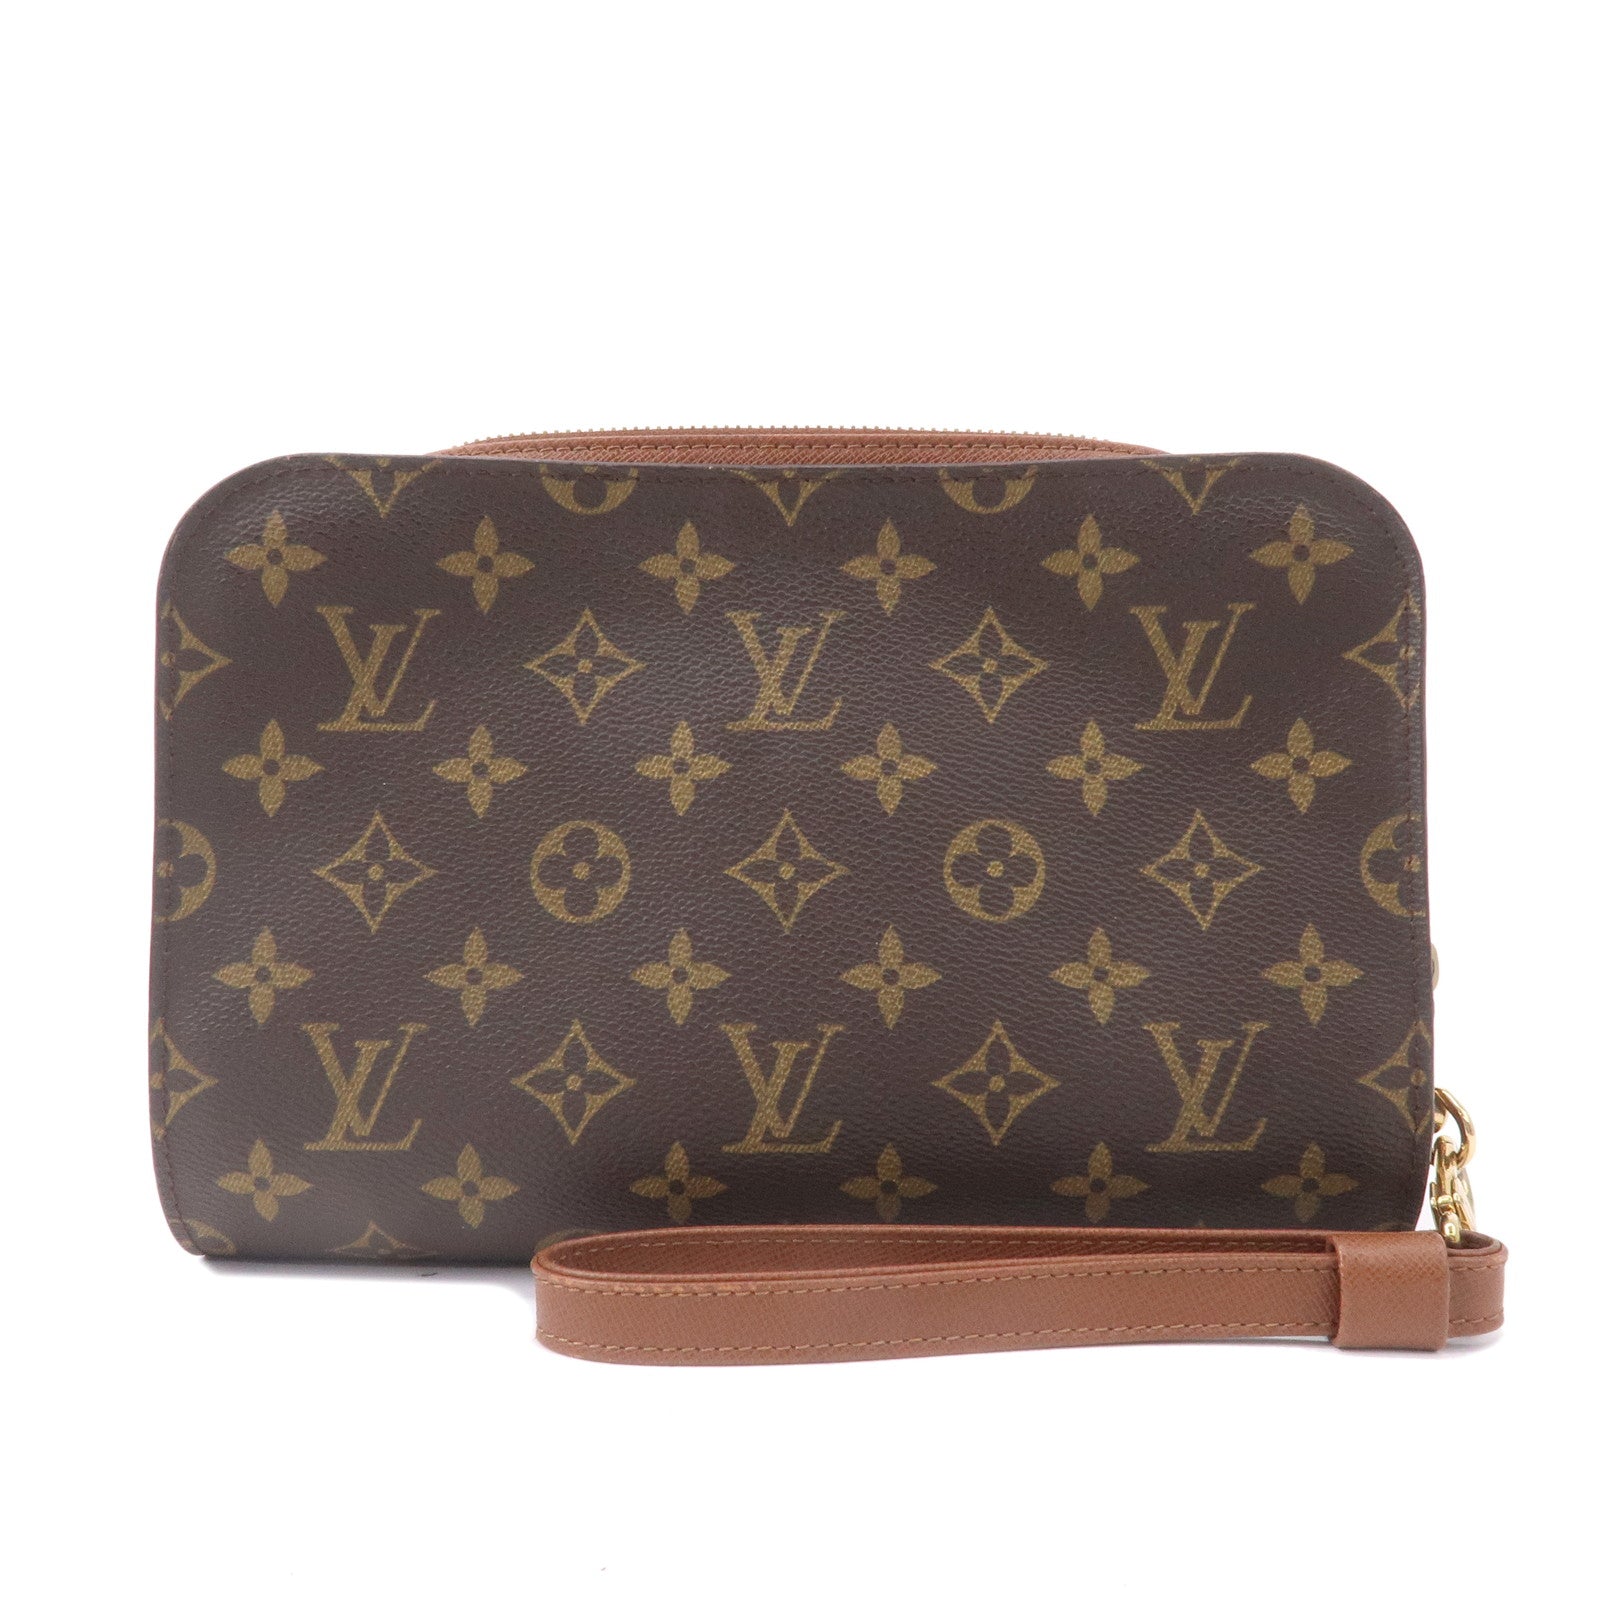 Authentic Louis Vuitton Monogram Orsay Clutch Hand Bag Purse